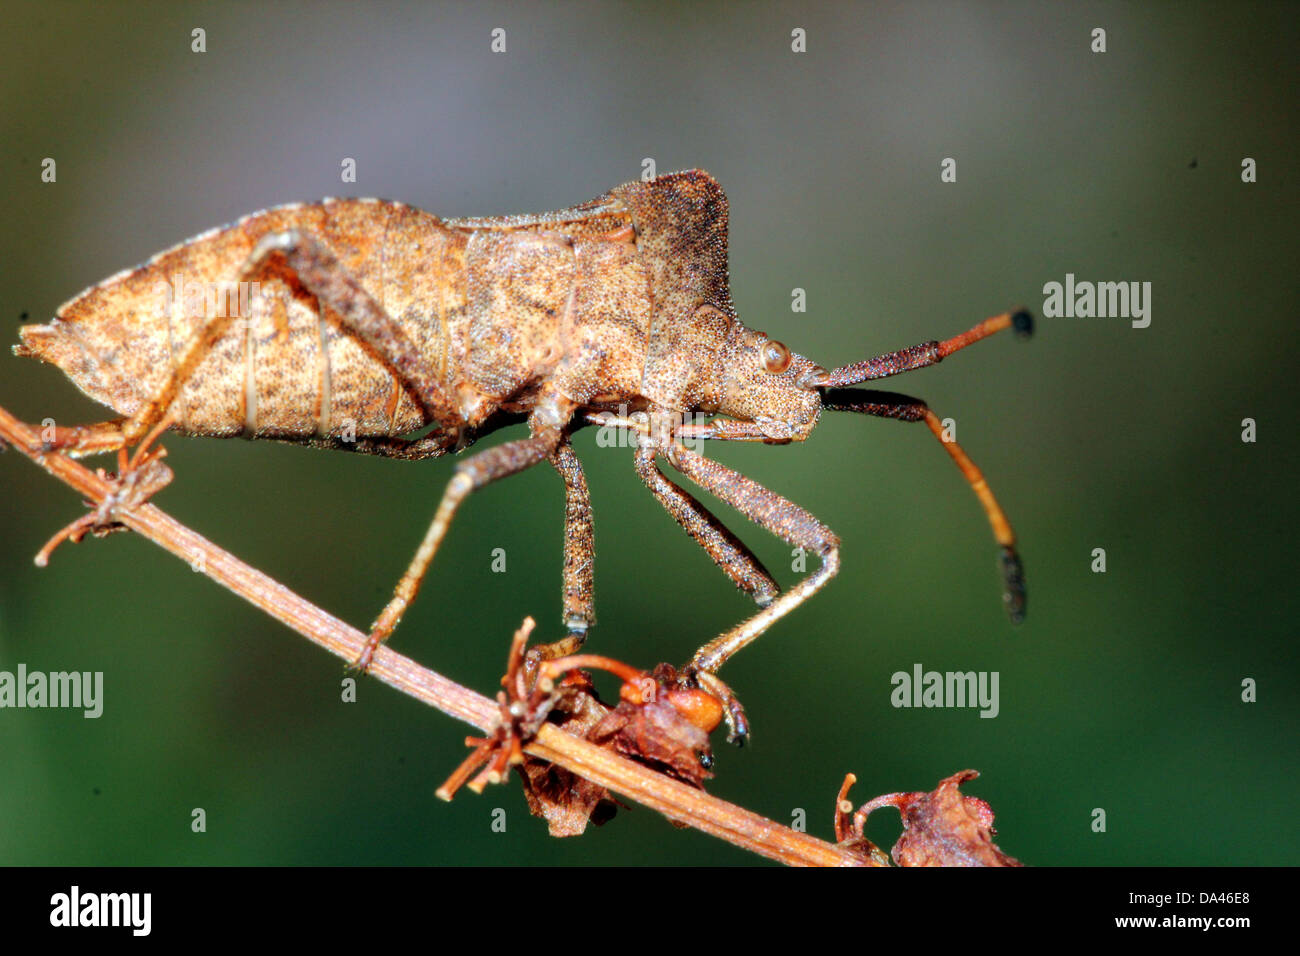 Detaillierten Makroaufnahmen von bräunlich Dock Bug (Coreus Marginatus) im Nymphe und Erwachsenen Stadium (20 Bilder in Serie) Stockfoto